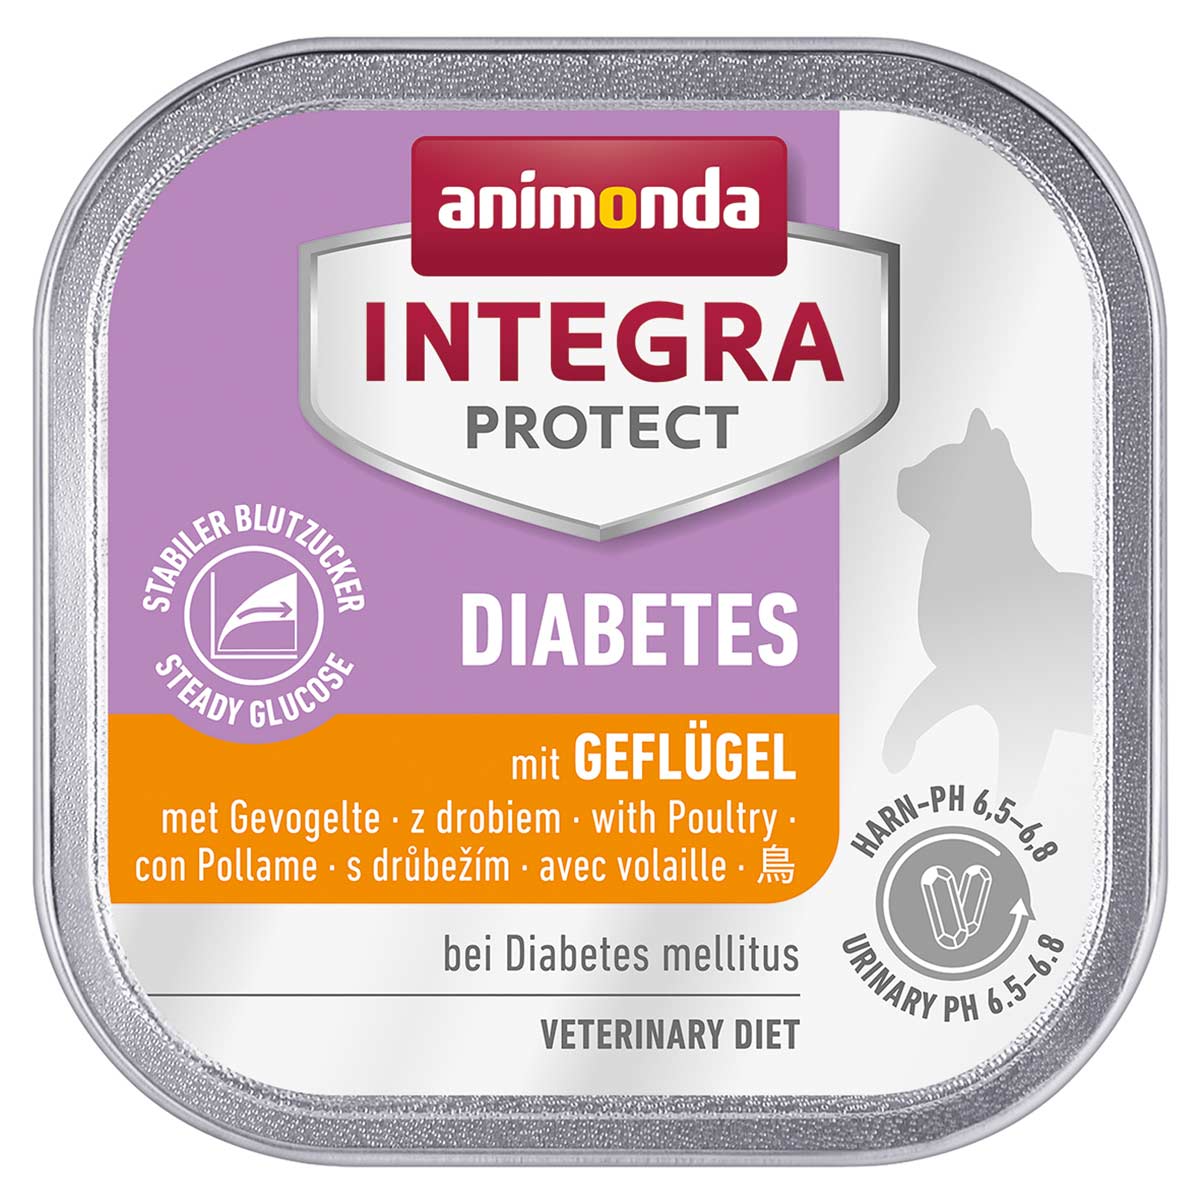 animonda INTEGRA PROTECT Diabetes mit Geflügel 16x100g von animonda Integra Protect